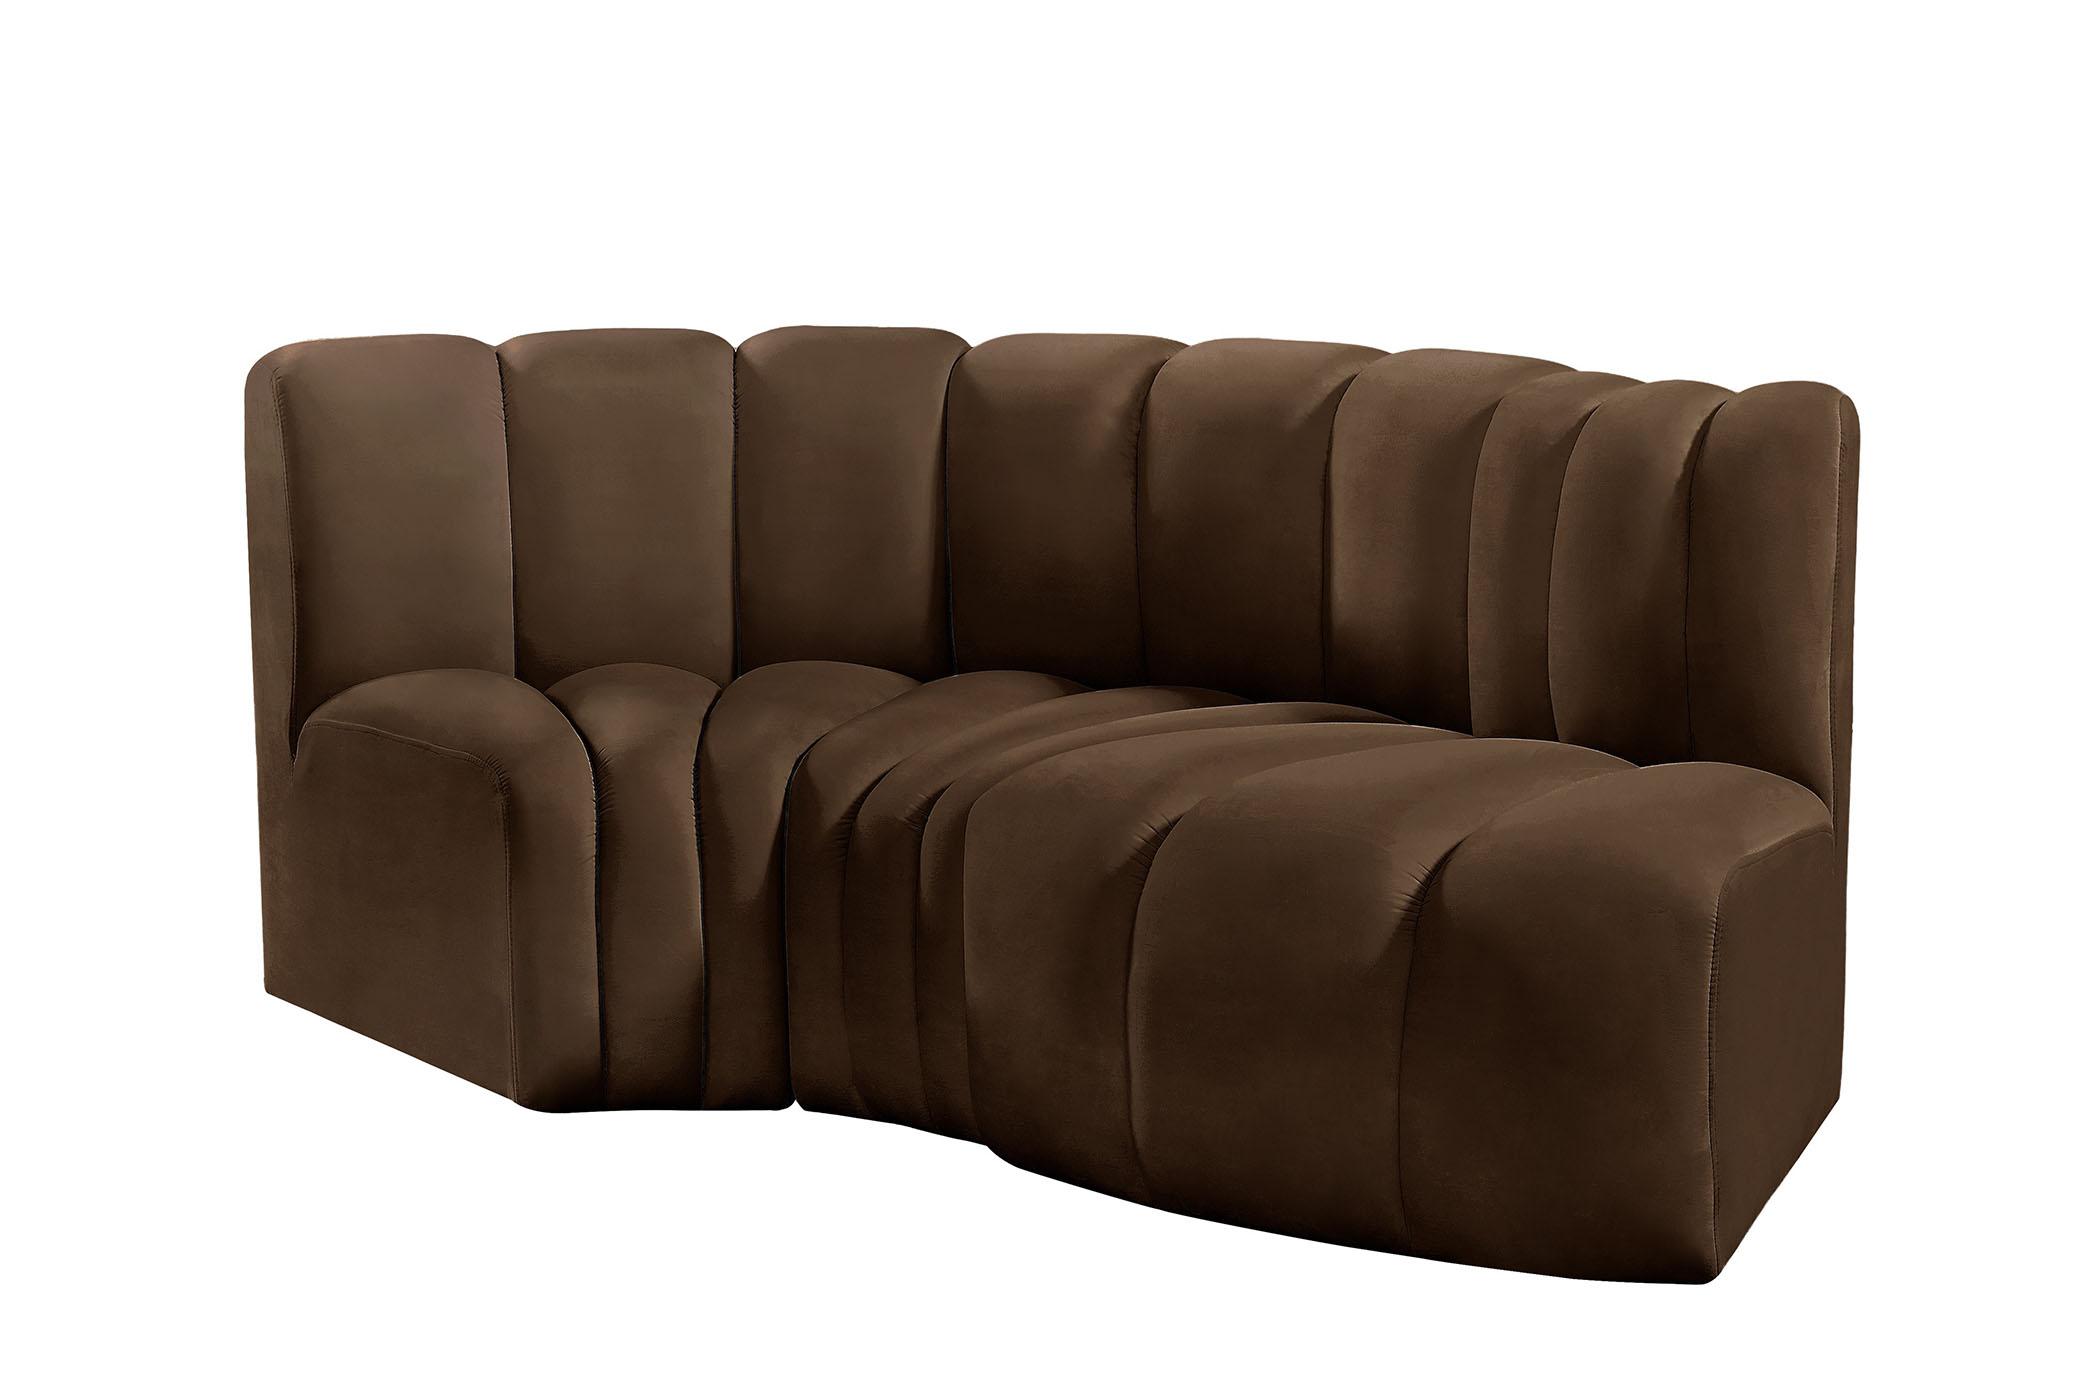 

    
103Brown-S3D Meridian Furniture Modular Sectional Sofa
